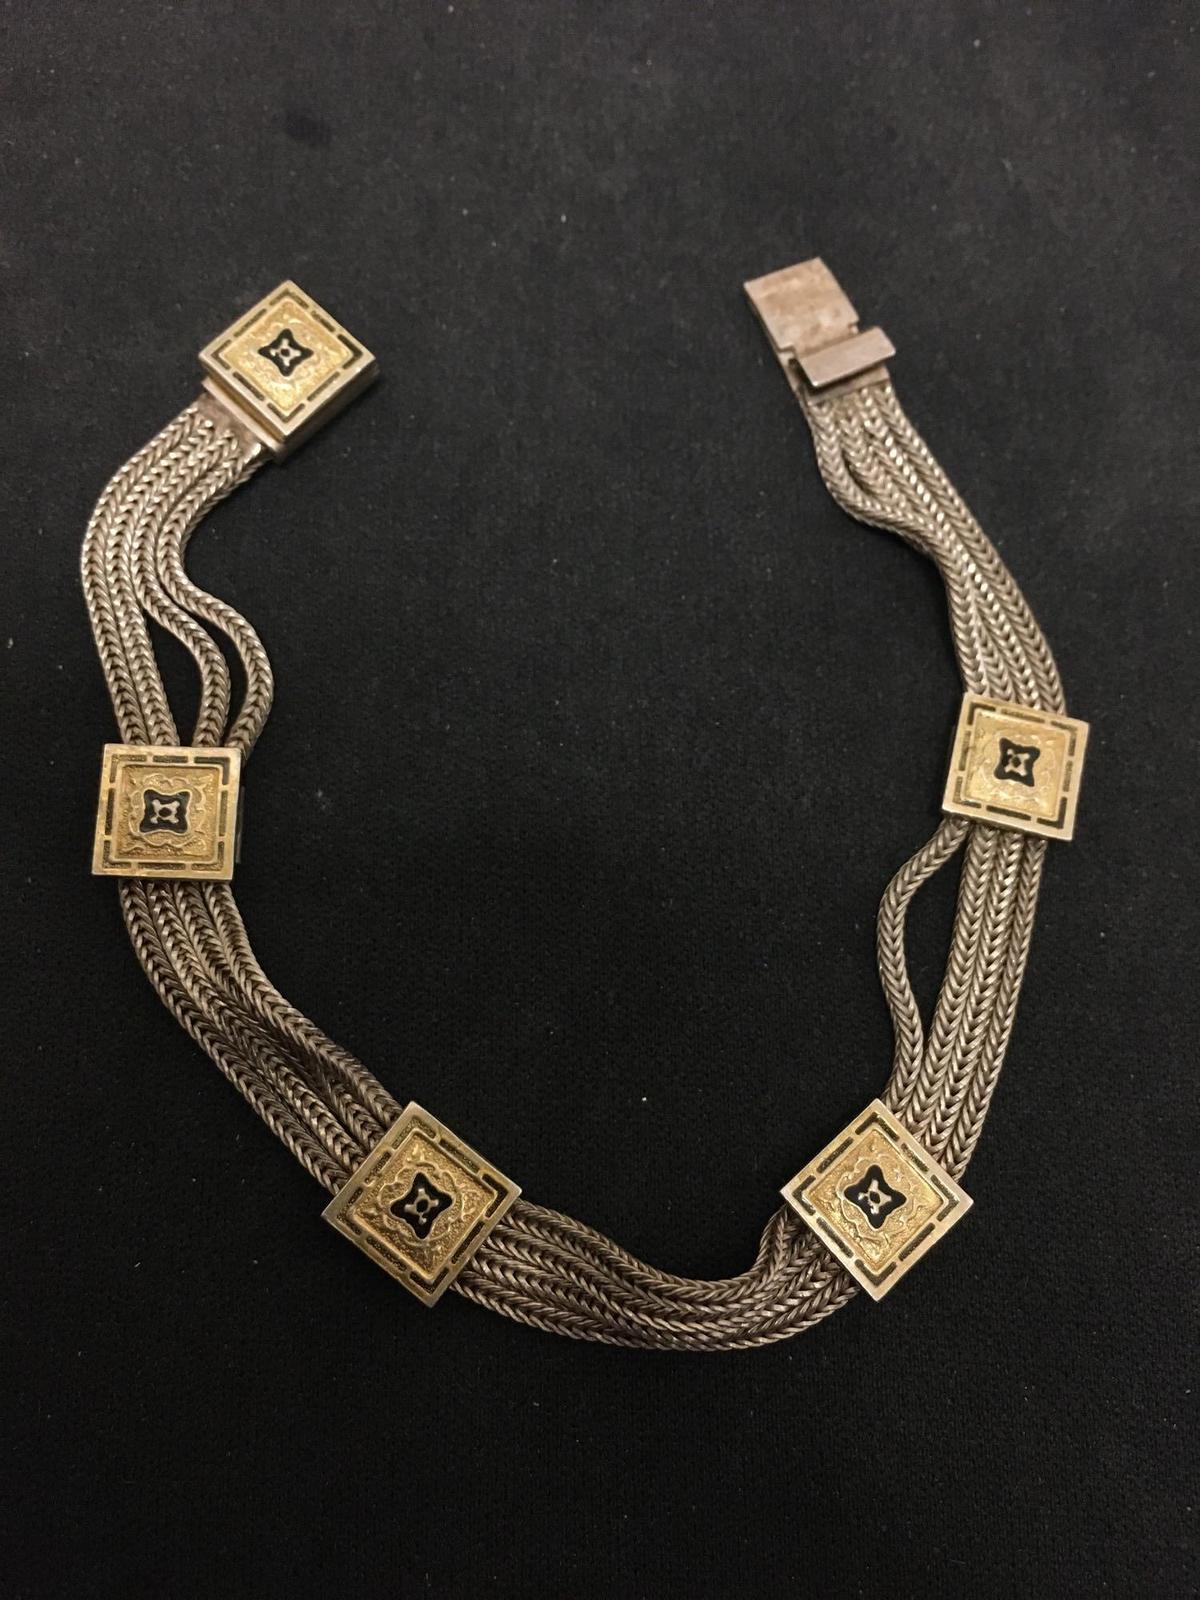 Antique Designed Sterling Silver & Gilted Enamel Chain Bracelet - 7"